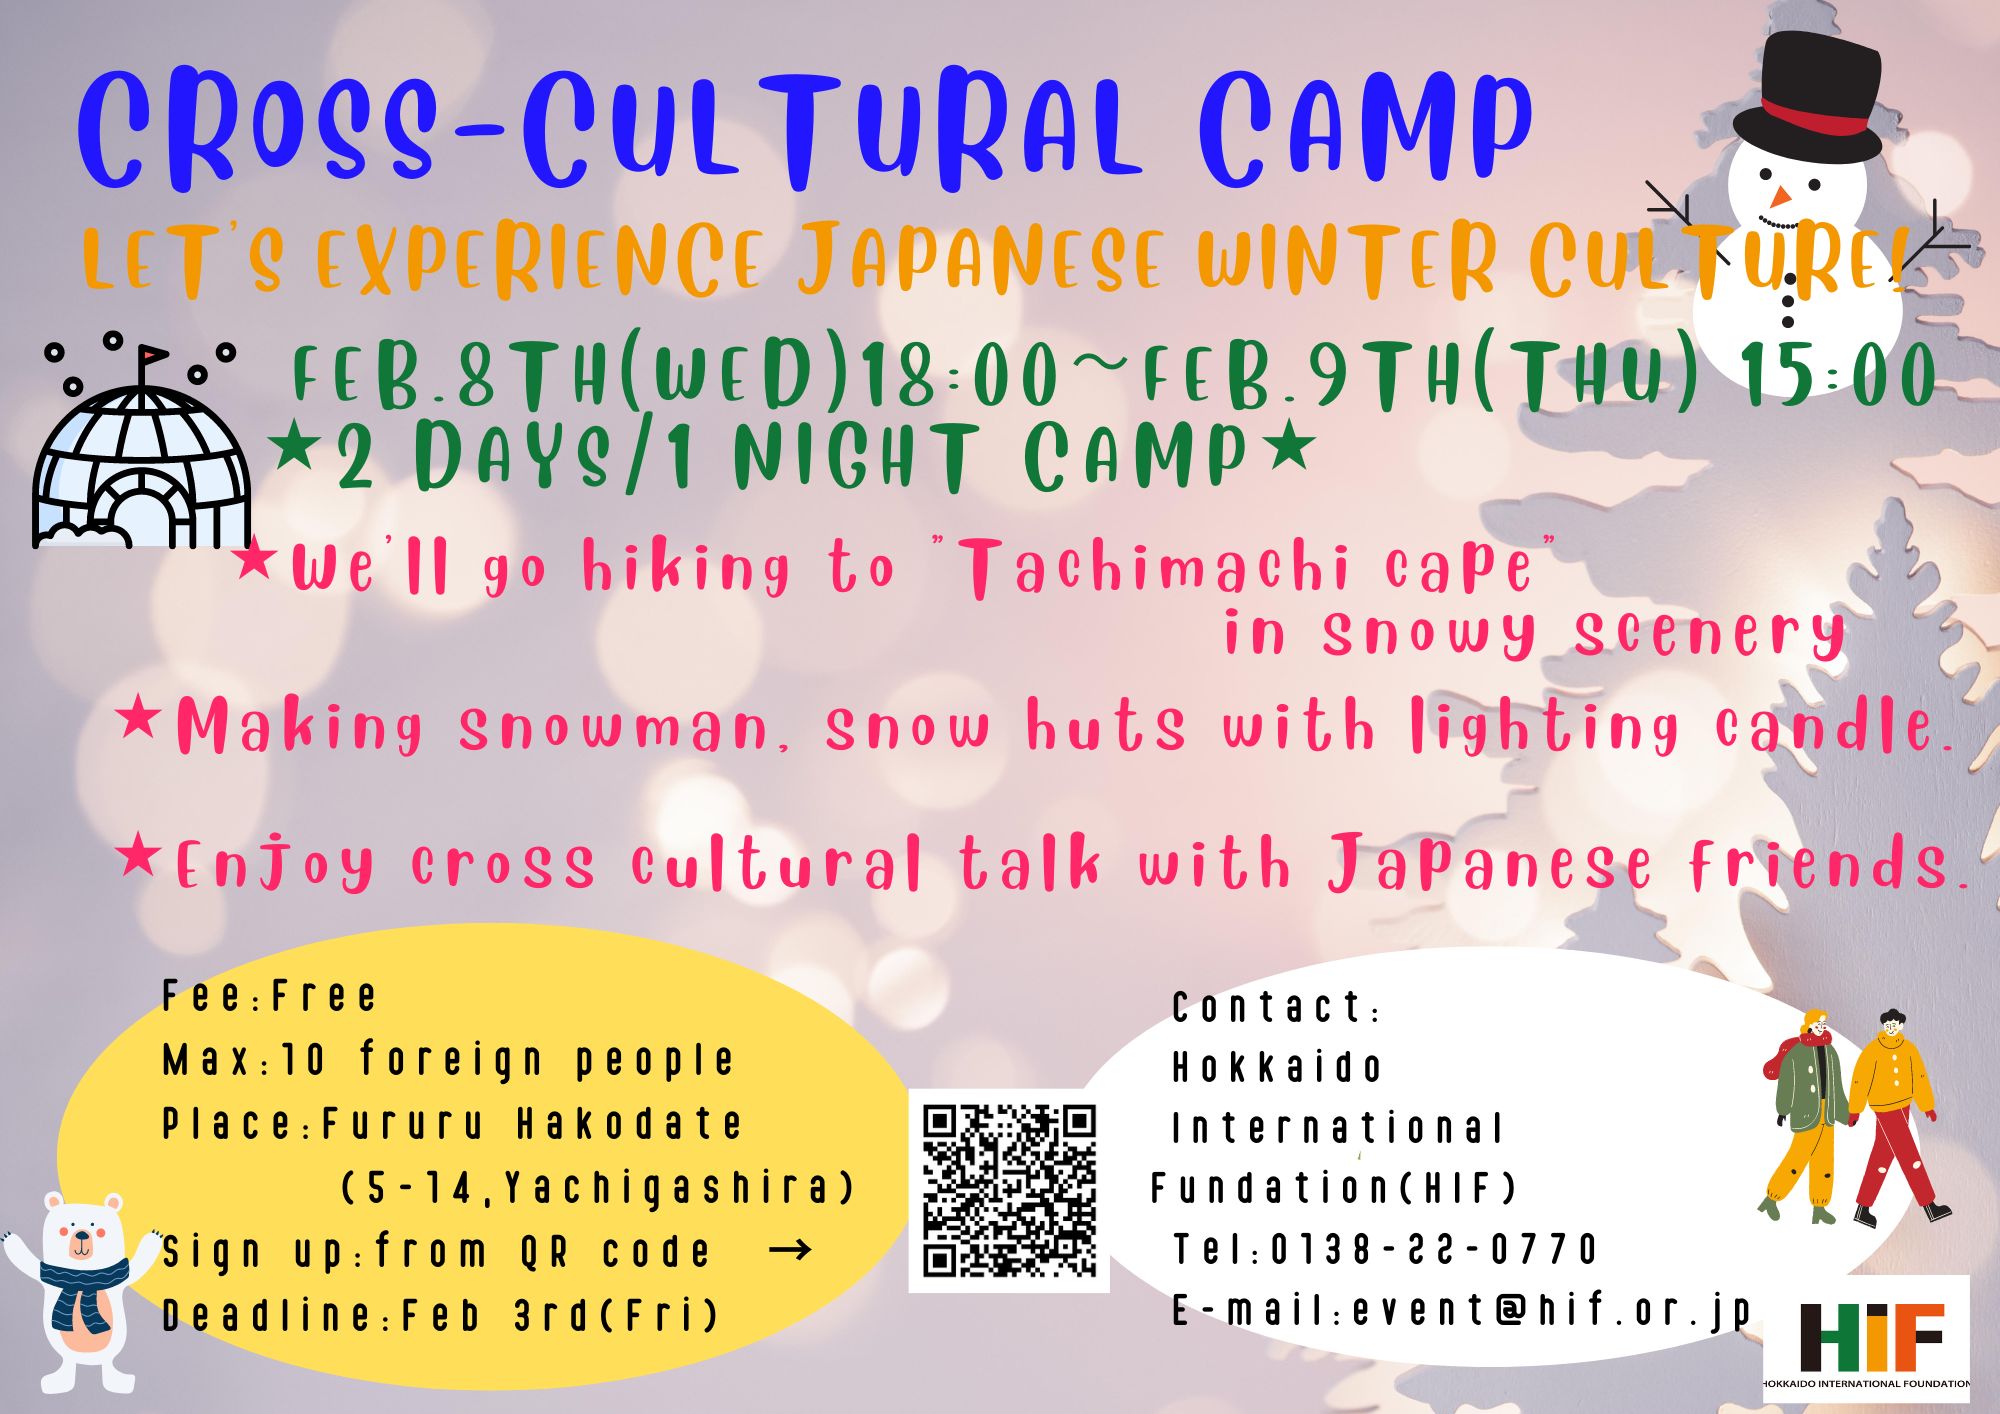 https://www.hif.or.jp/Cross%20cultural%20camp.jpg